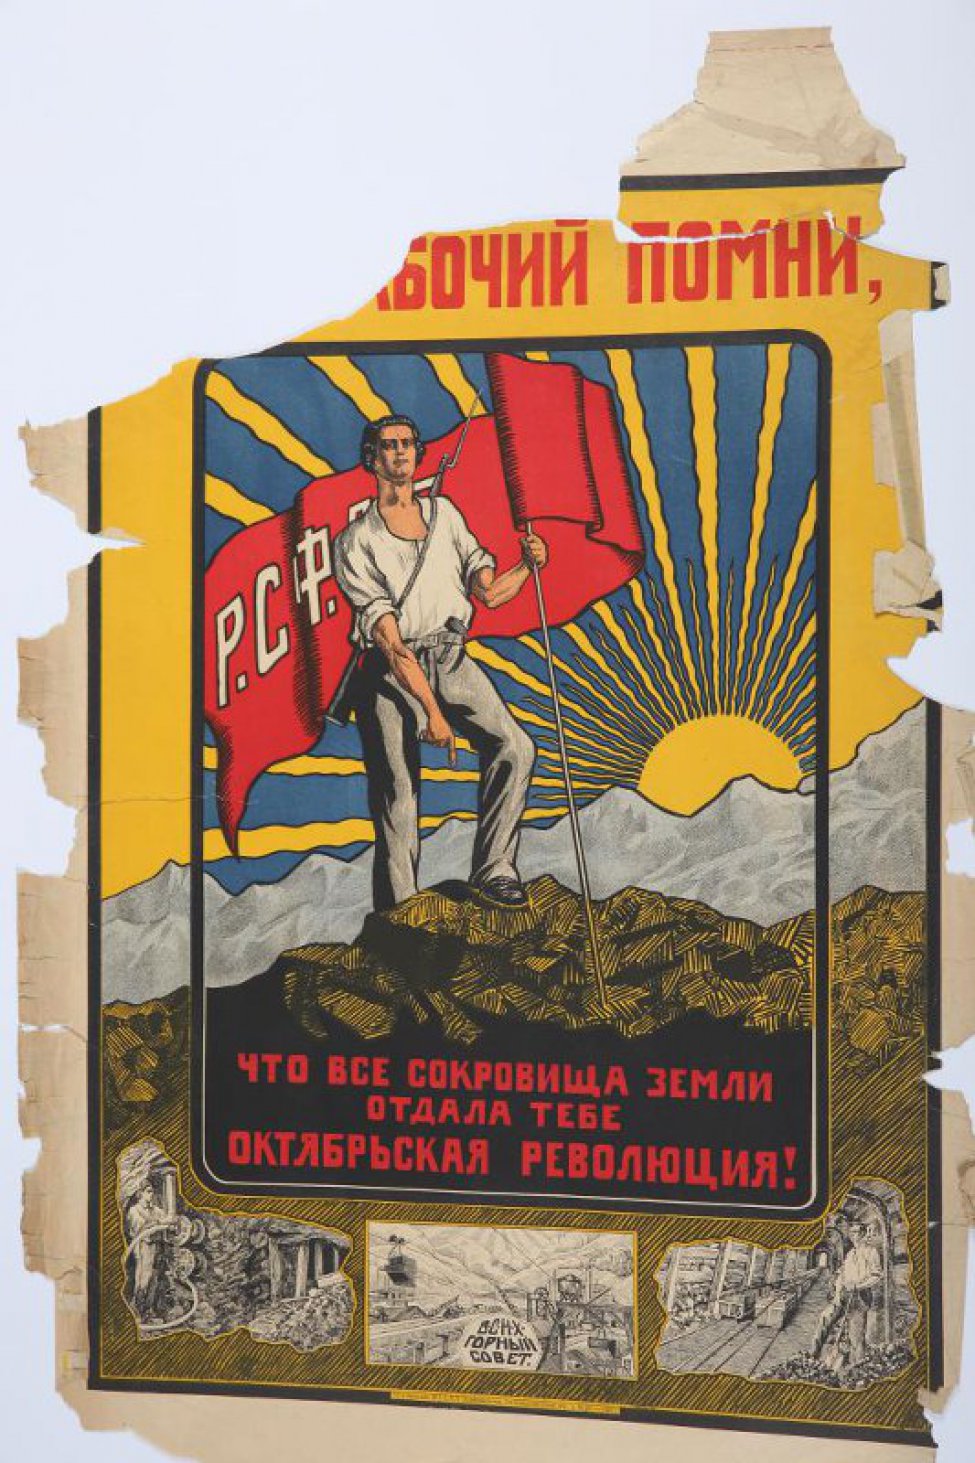 Изображен рабочий, стоящий на руде и держащий в левой руке красное знамя с белыми буквами "РСФСР" . На горизонте восходящее солнце. Внизу три рисунка изображающие механизированную добычу и транспорт руды.